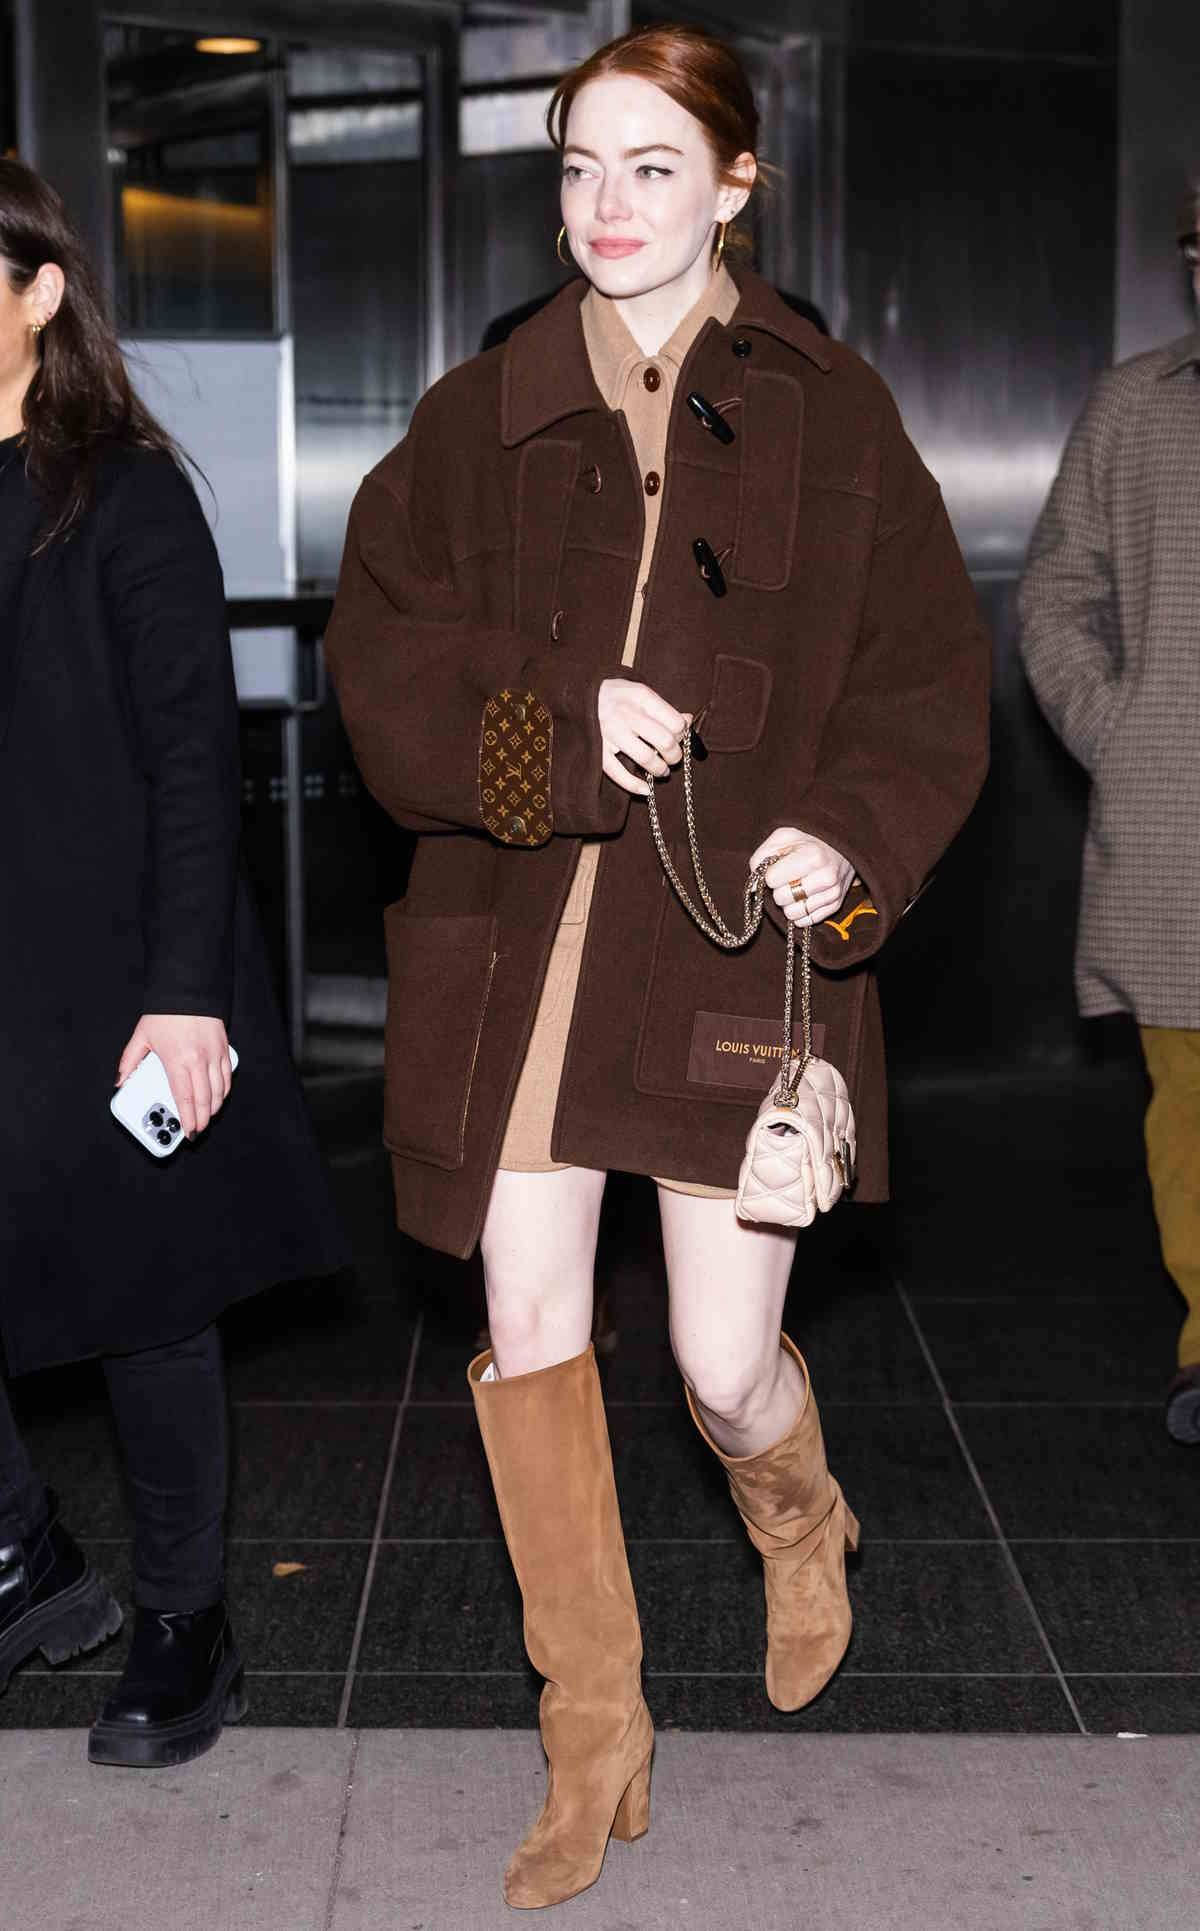 Emma Stone w rudych włosach na zimę 2023. Emma Stone zdecydowała się na zmianę fryzury, powracając do kultowych rudych włosów. Emma Stone podkręca wizerunek w stylizacji w czekoladowym odcieniu i z zamszowymi kozakami w karmelowym odcieniu.